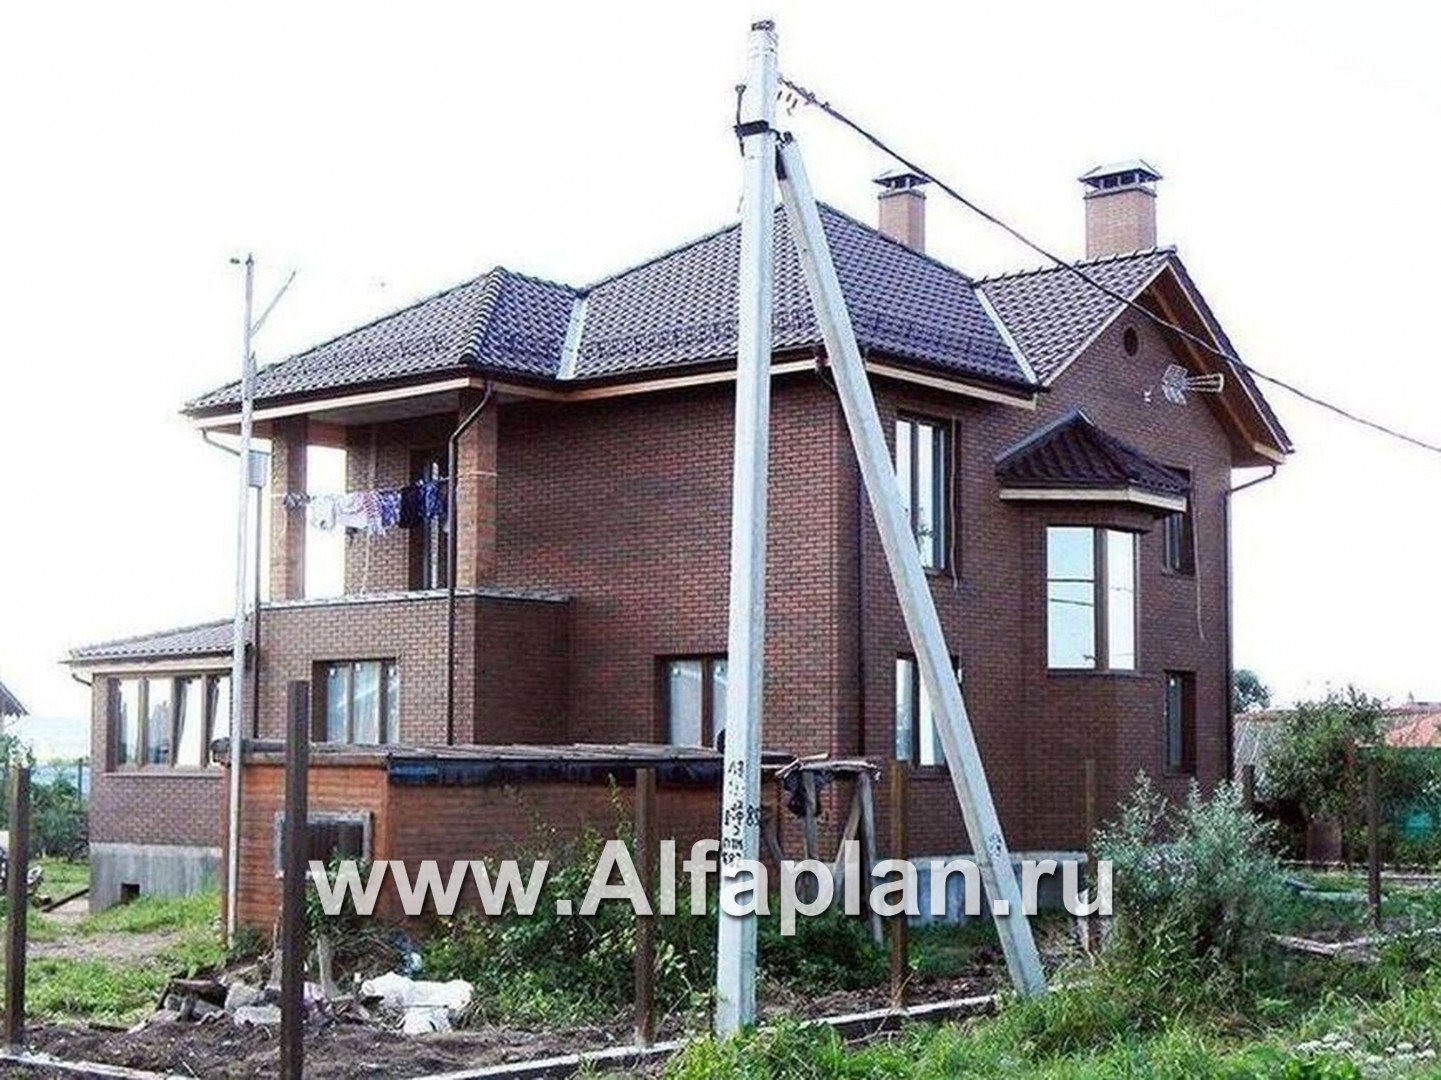 Проекты домов Альфаплан - «Лавиери Плюс»- проект дома с изящным крыльцом и эркером - дополнительное изображение №2